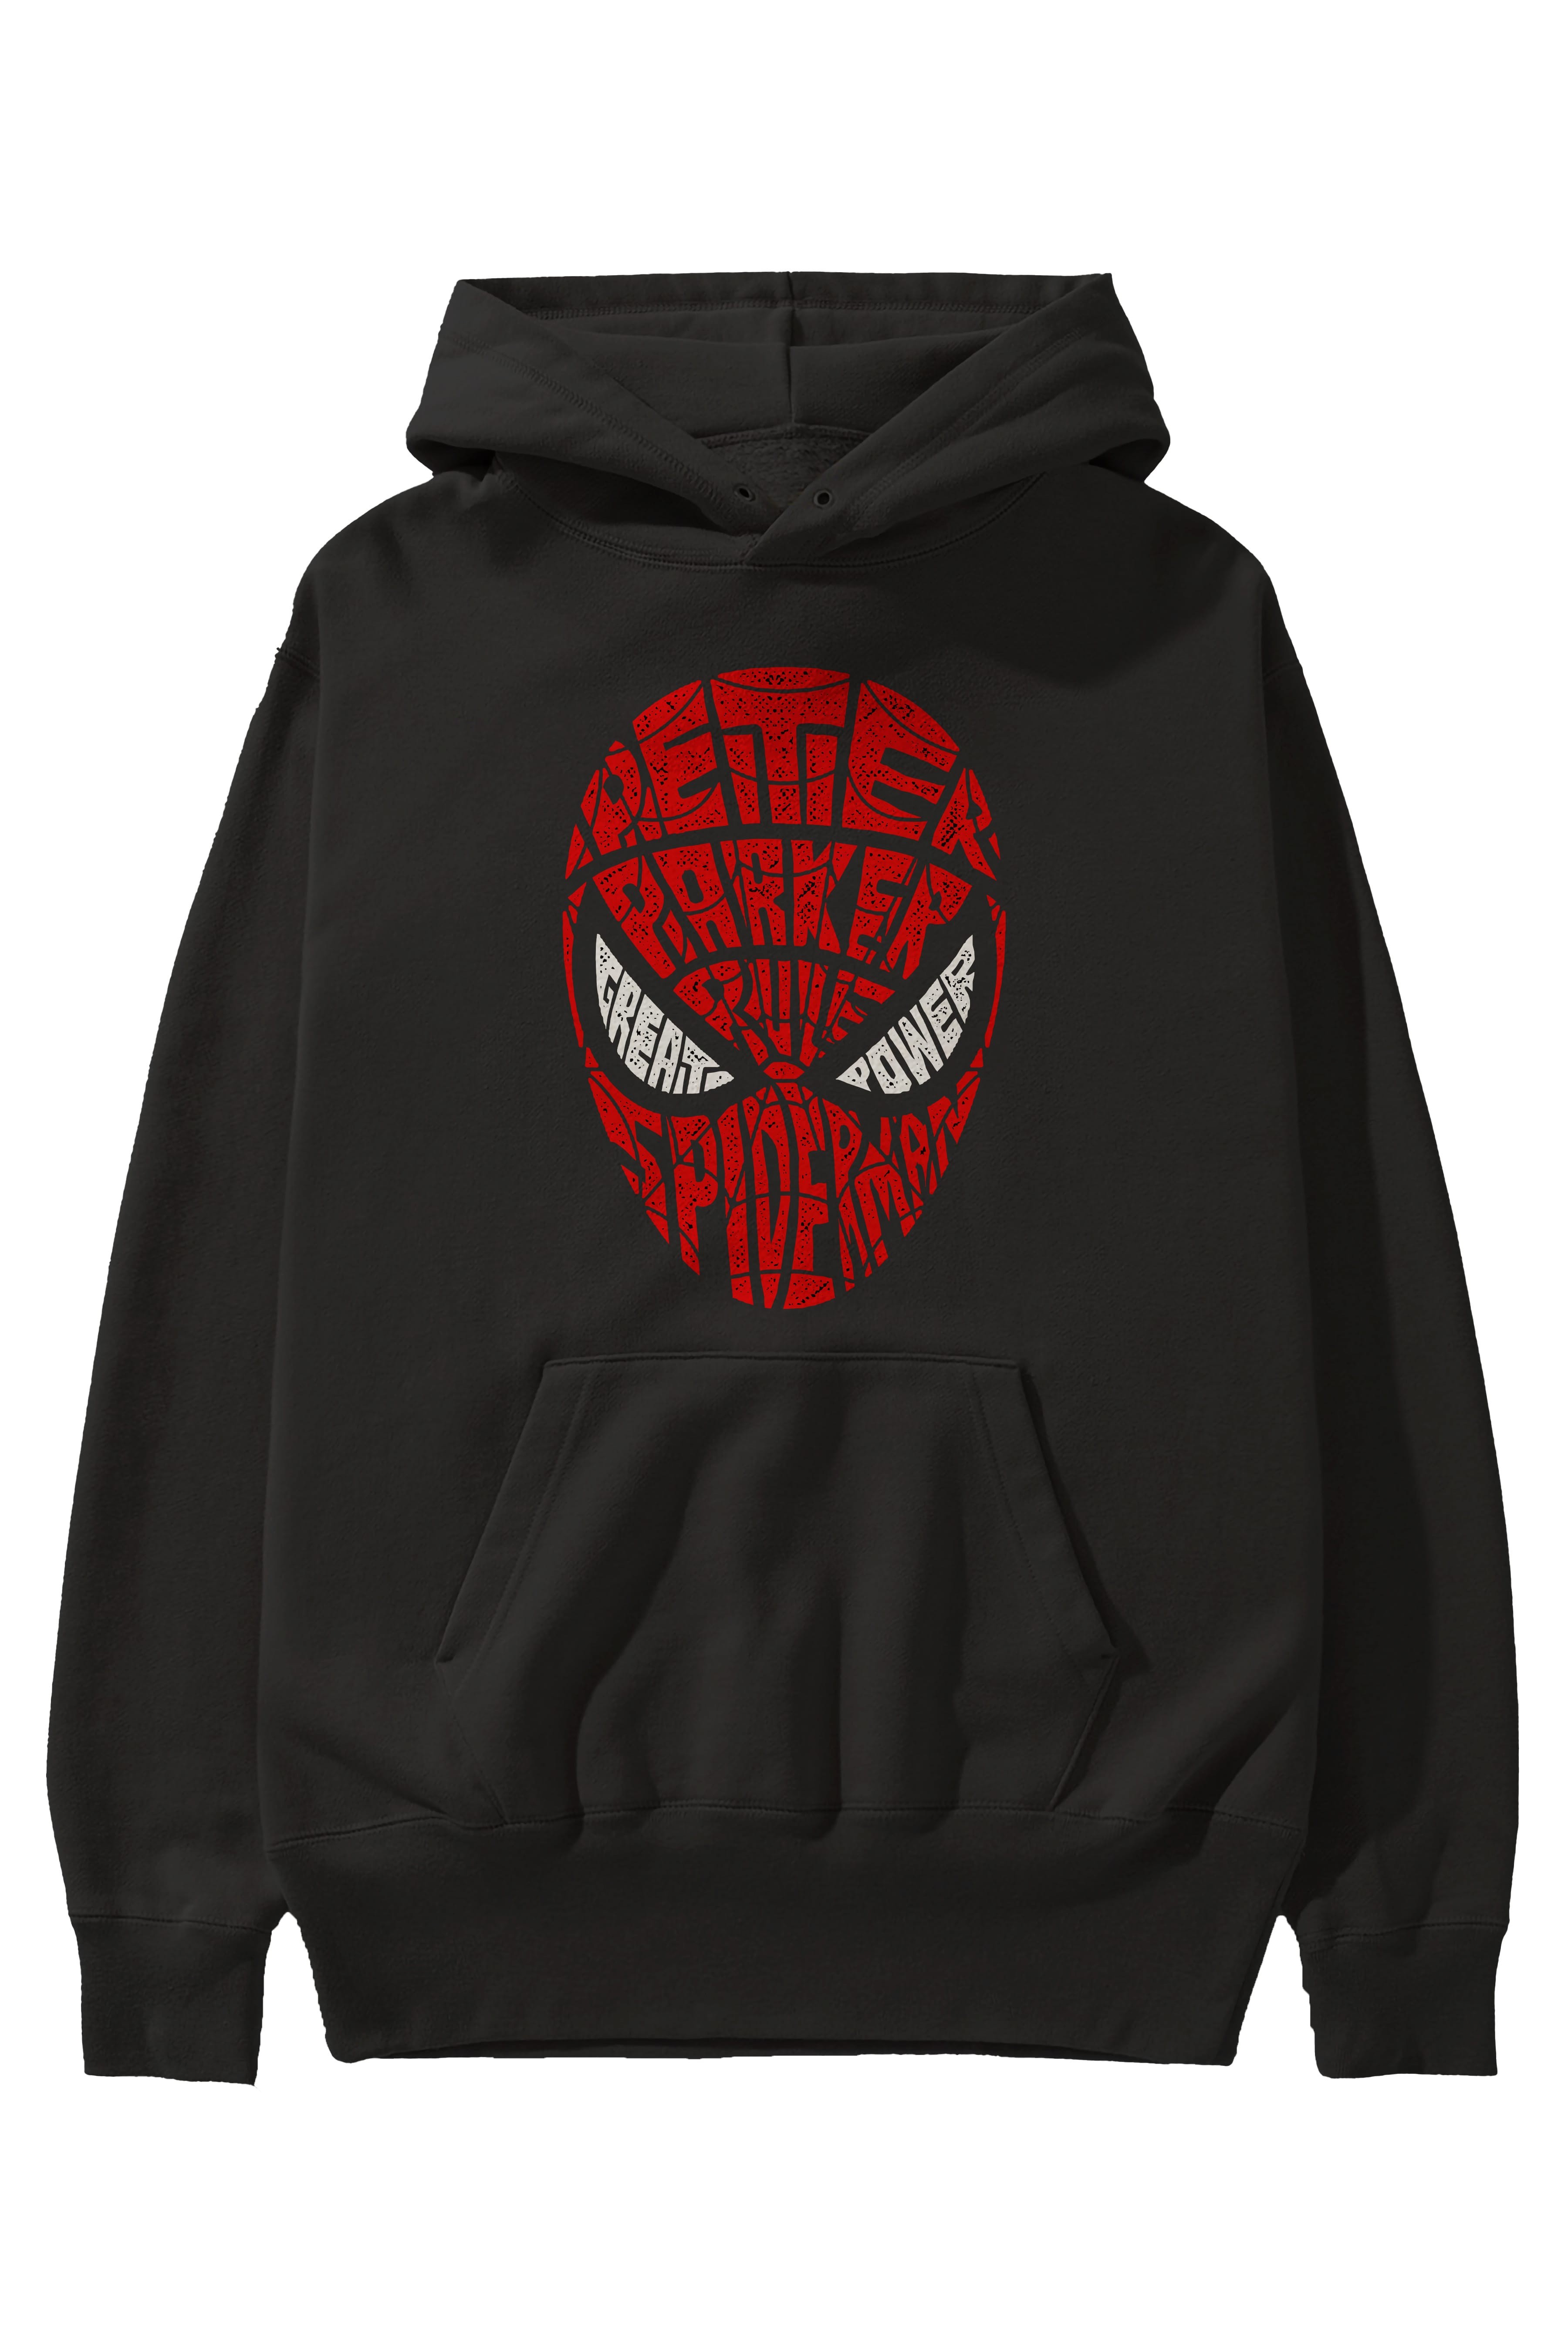 Spiderman Ön Baskılı Hoodie Oversize Kapüşonlu Sweatshirt Erkek Kadın Unisex